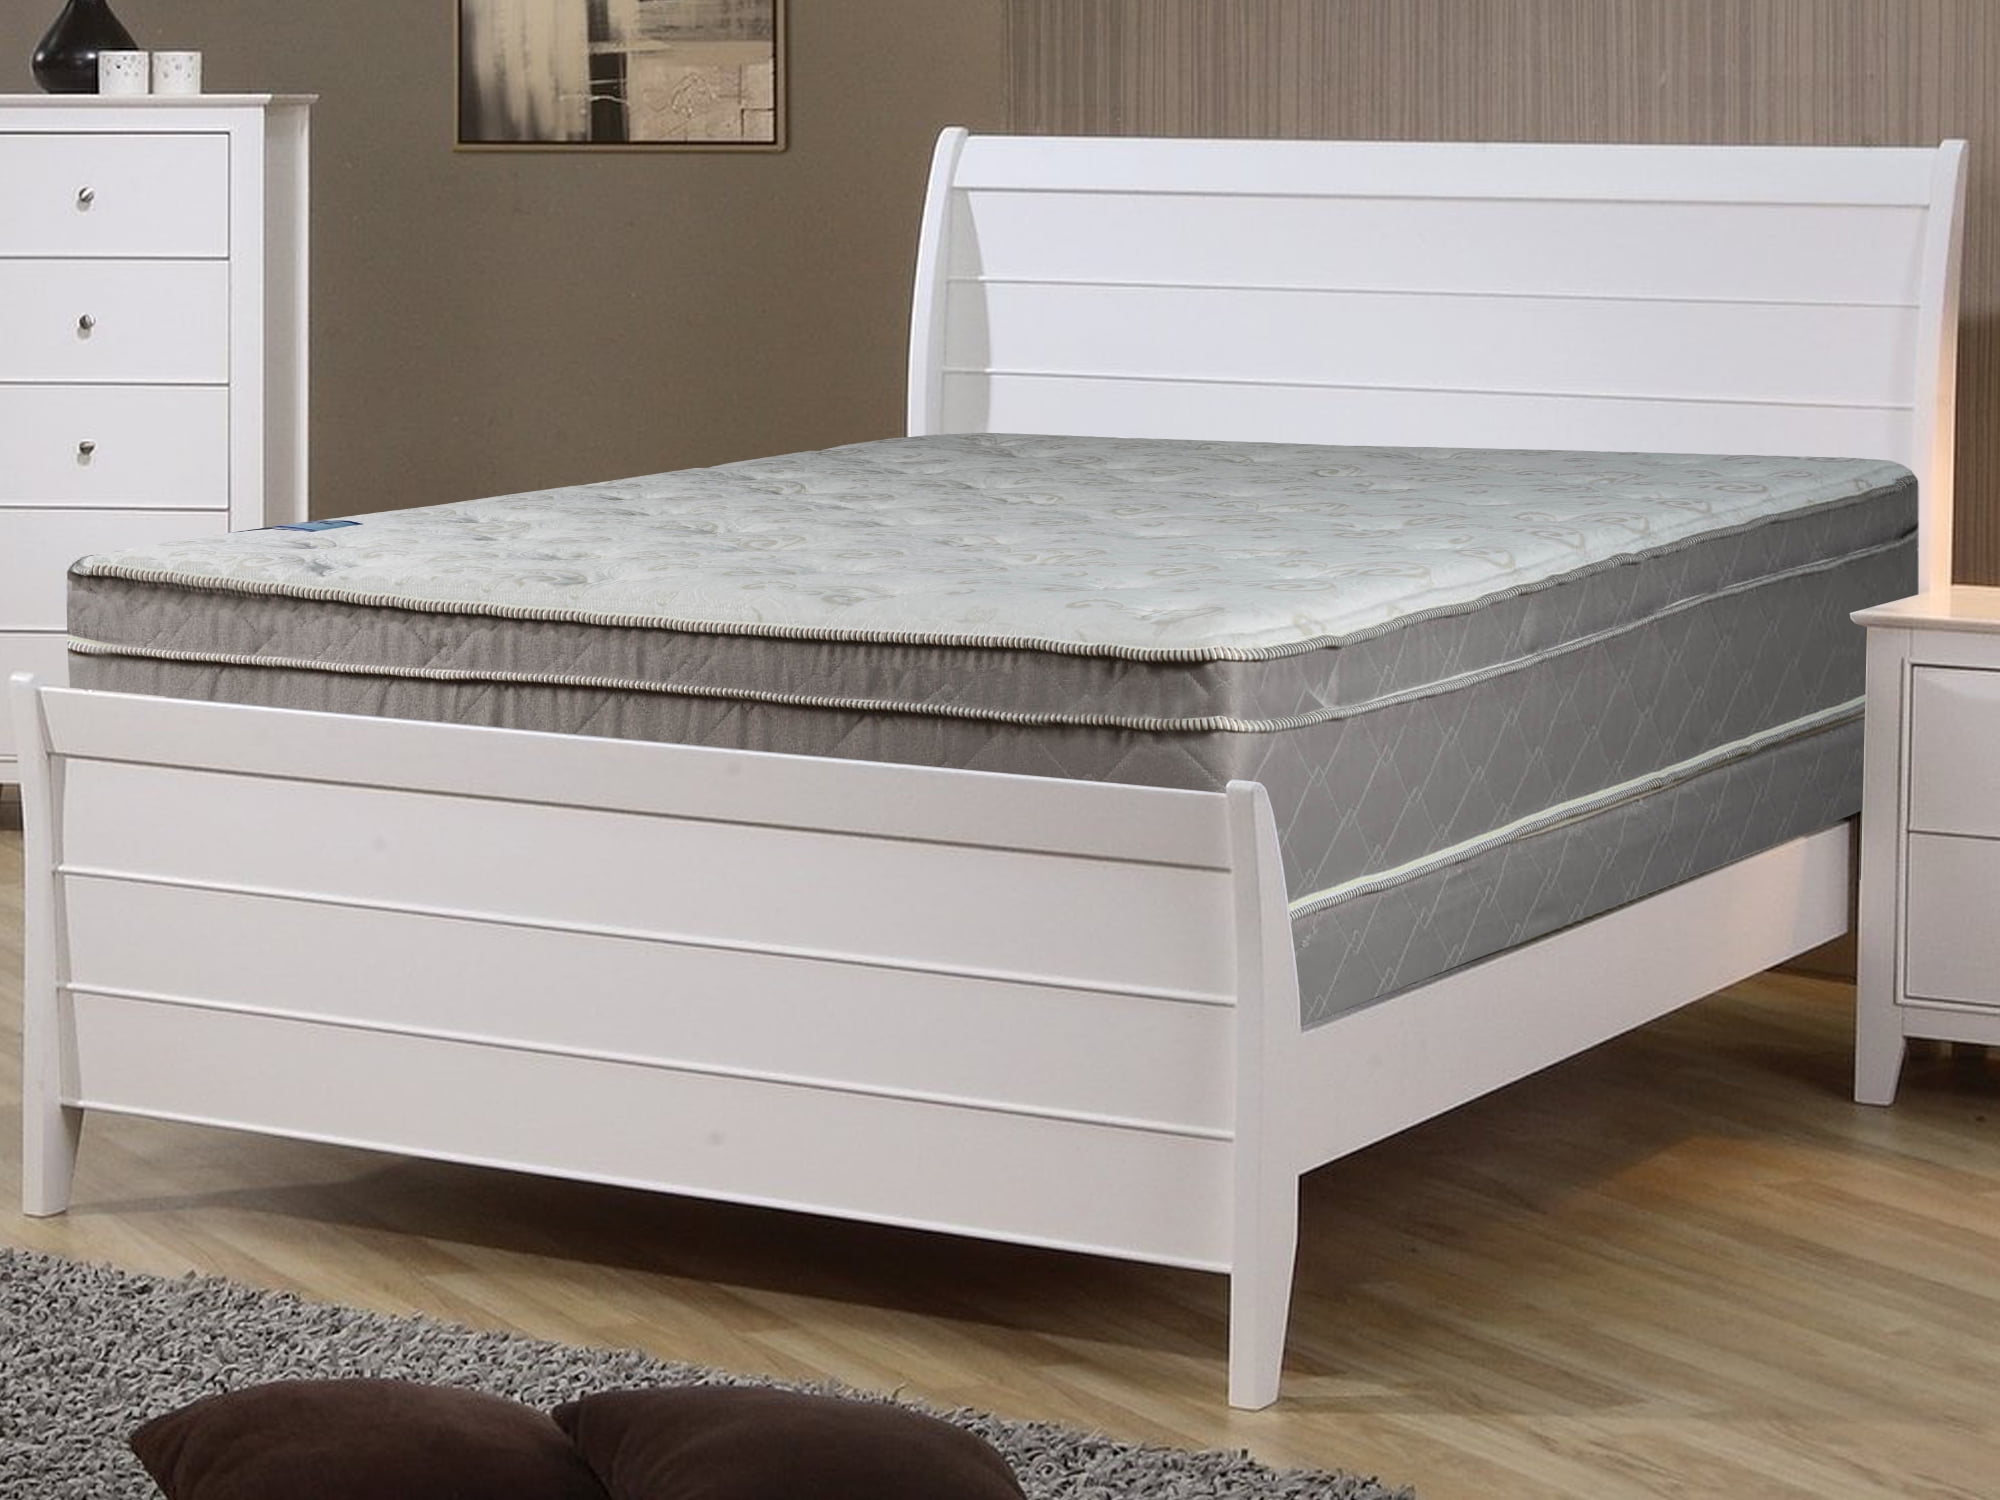 sleep calm eurotop mattress